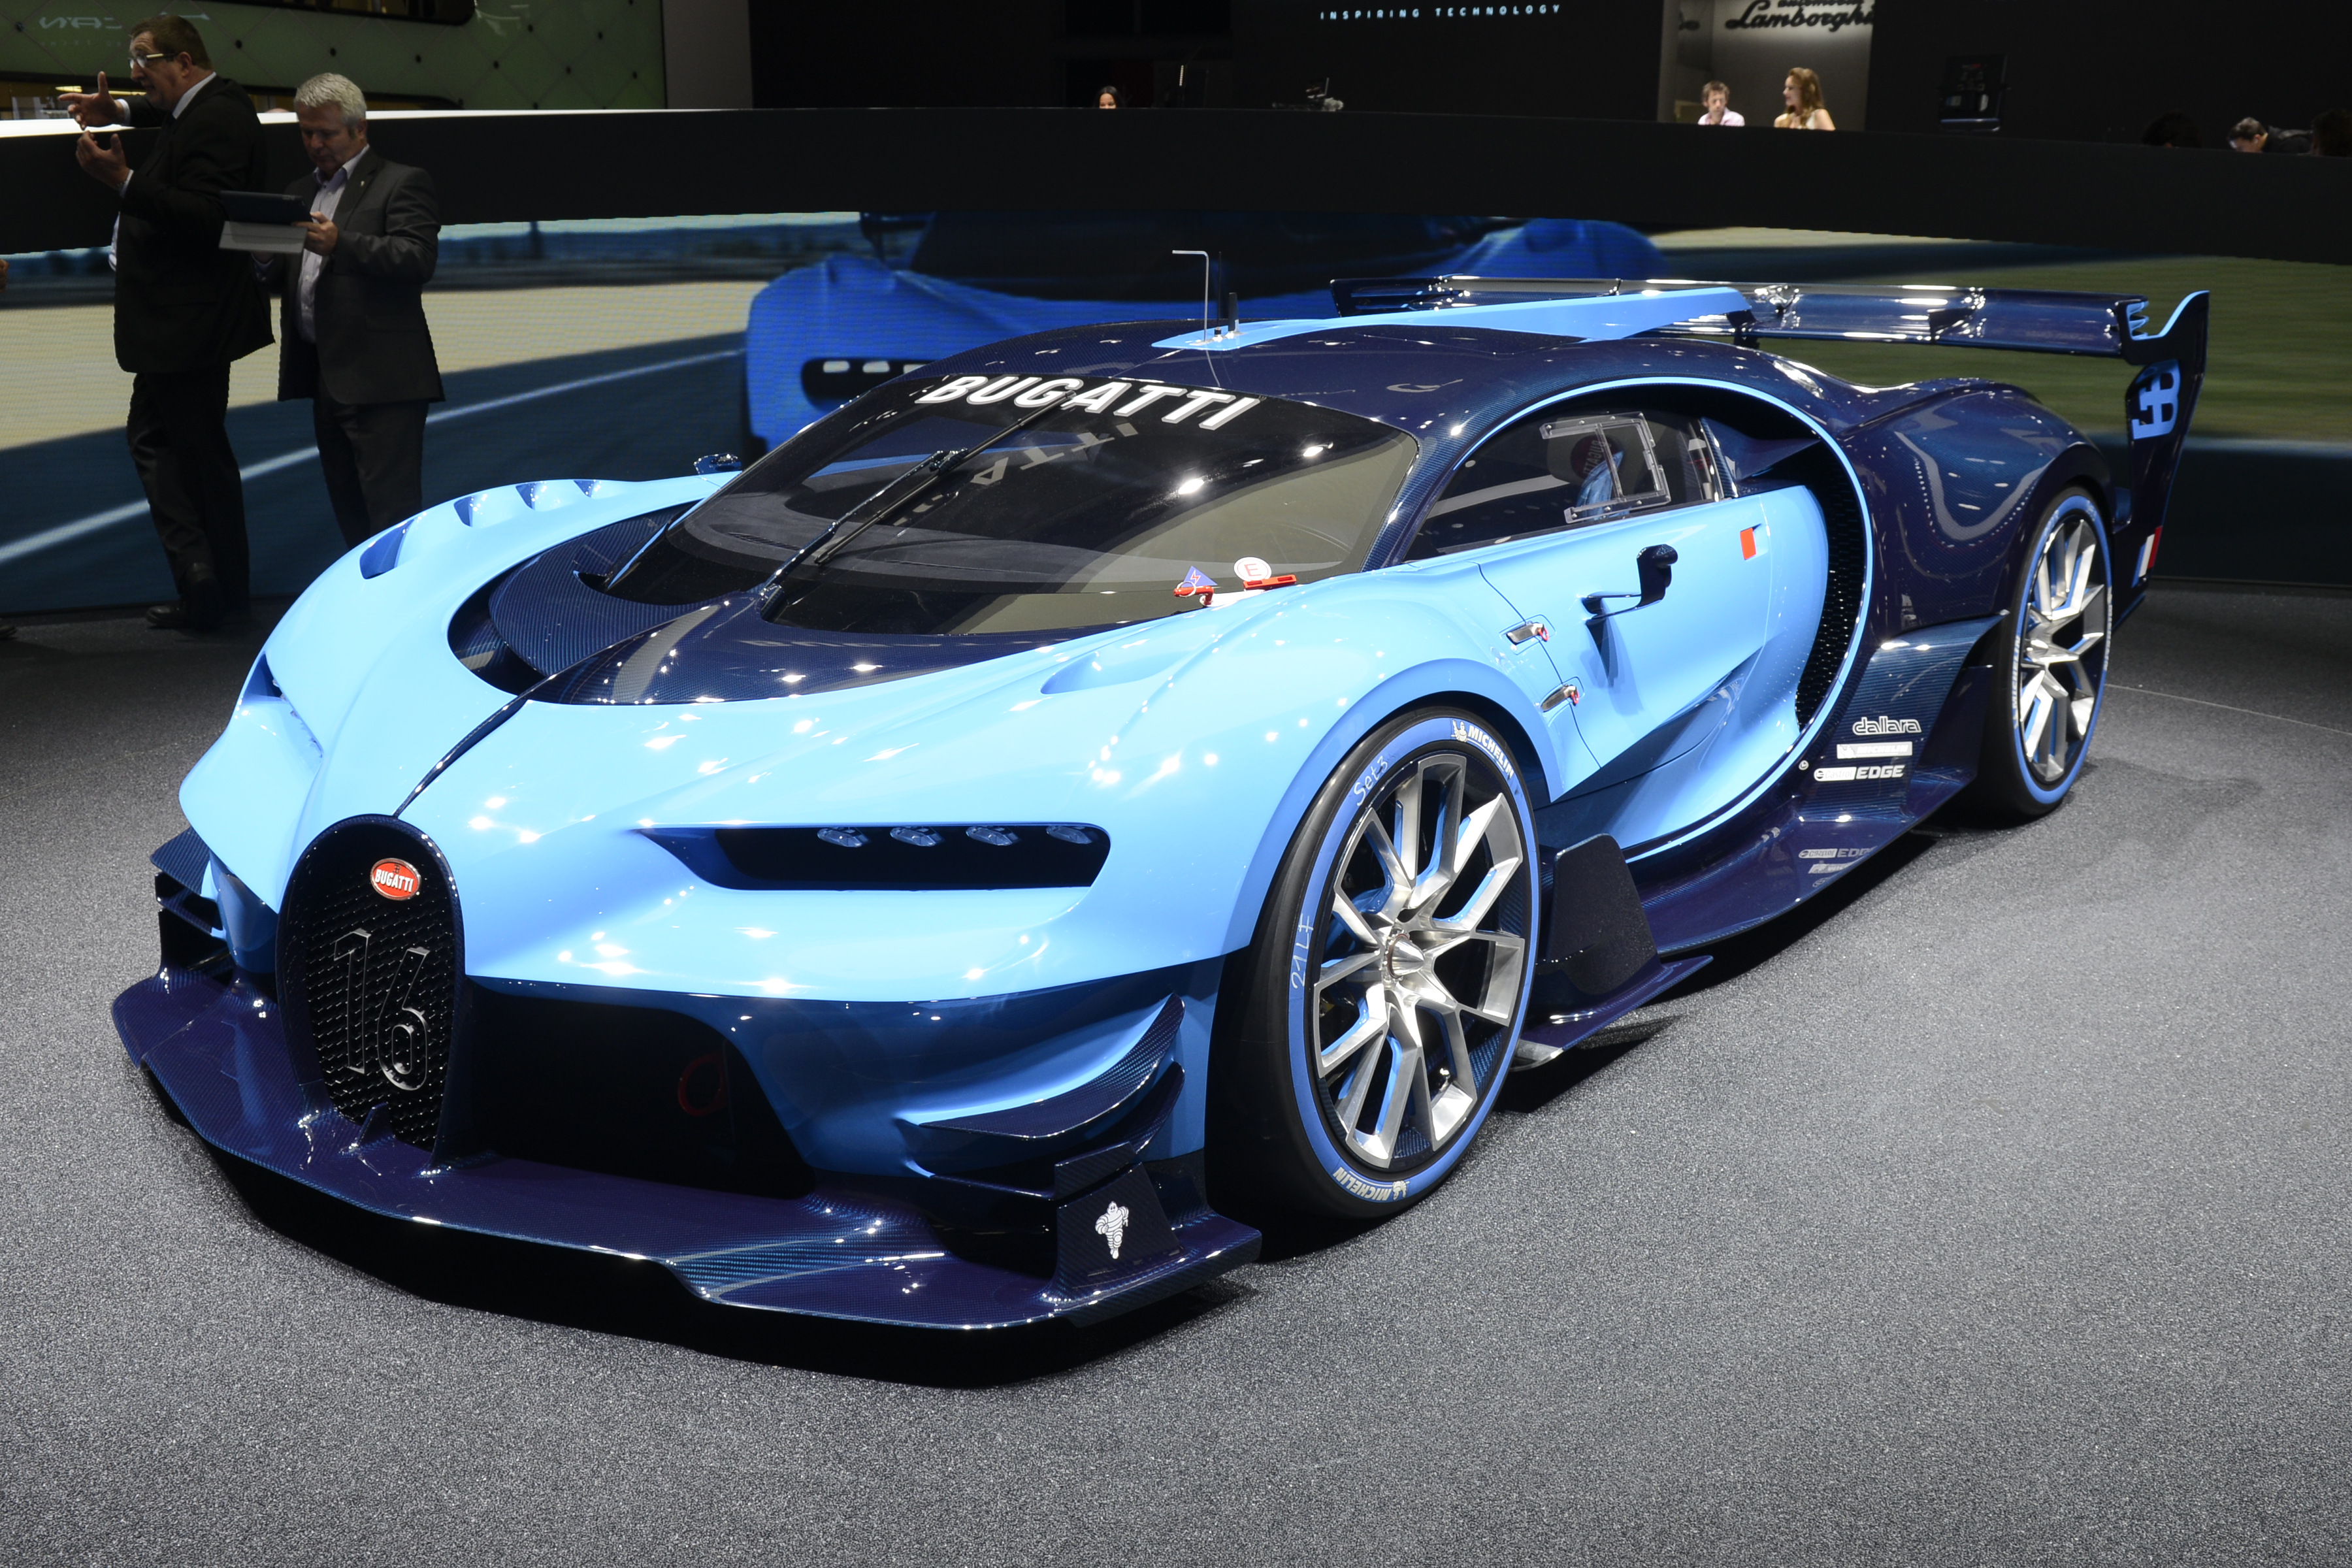 Bugatti Vision Gran Turismo (1)